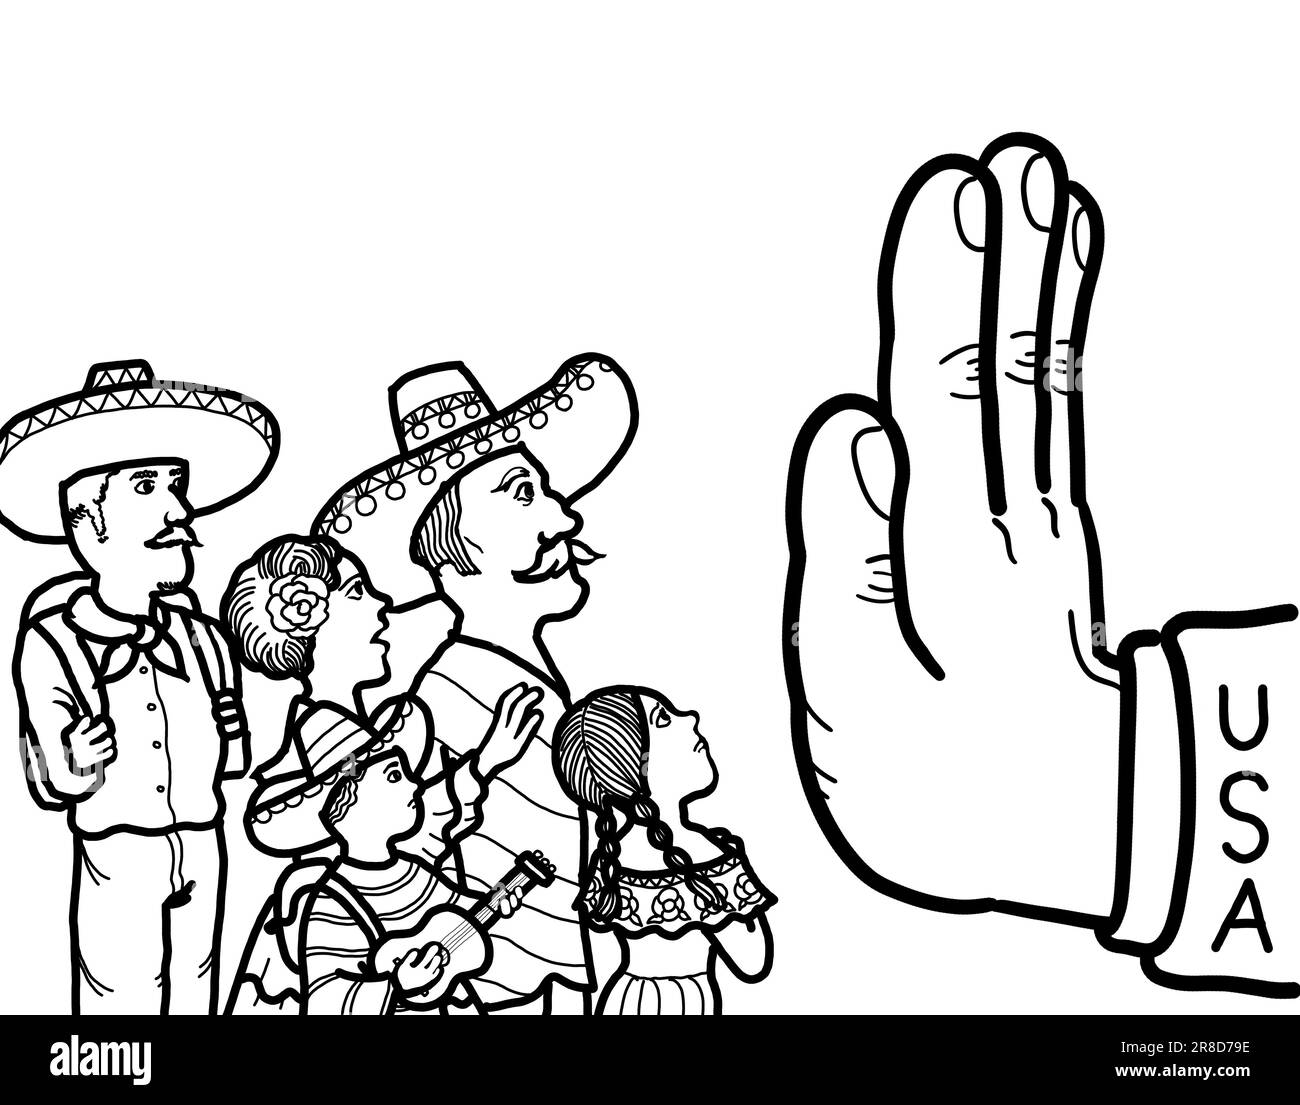 Eine Hand symbolisiert die Verhinderung der illegalen Einwanderung Mexikos, der Einreise von Flüchtlingen und Asylbewerbern in das Land. Stockfoto